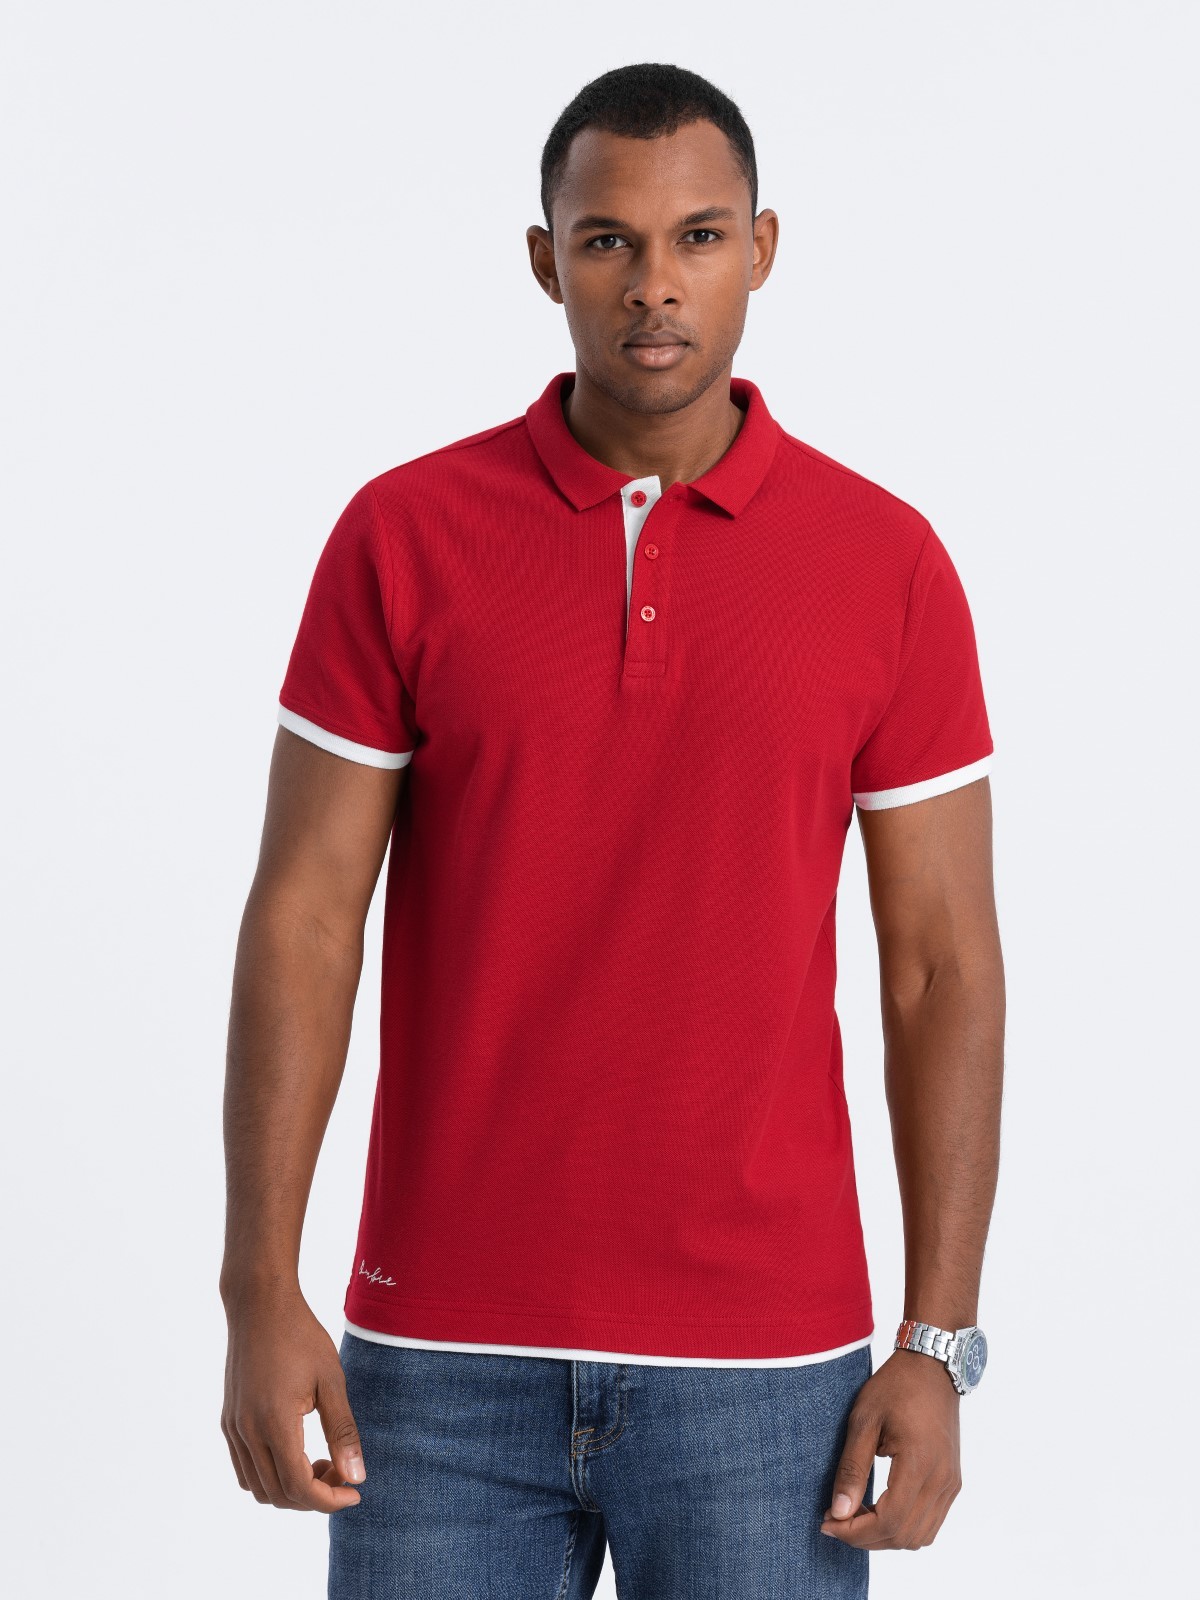 Men's cotton polo shirt - red V2 OM-POSS V2 OM-POSS - 0113